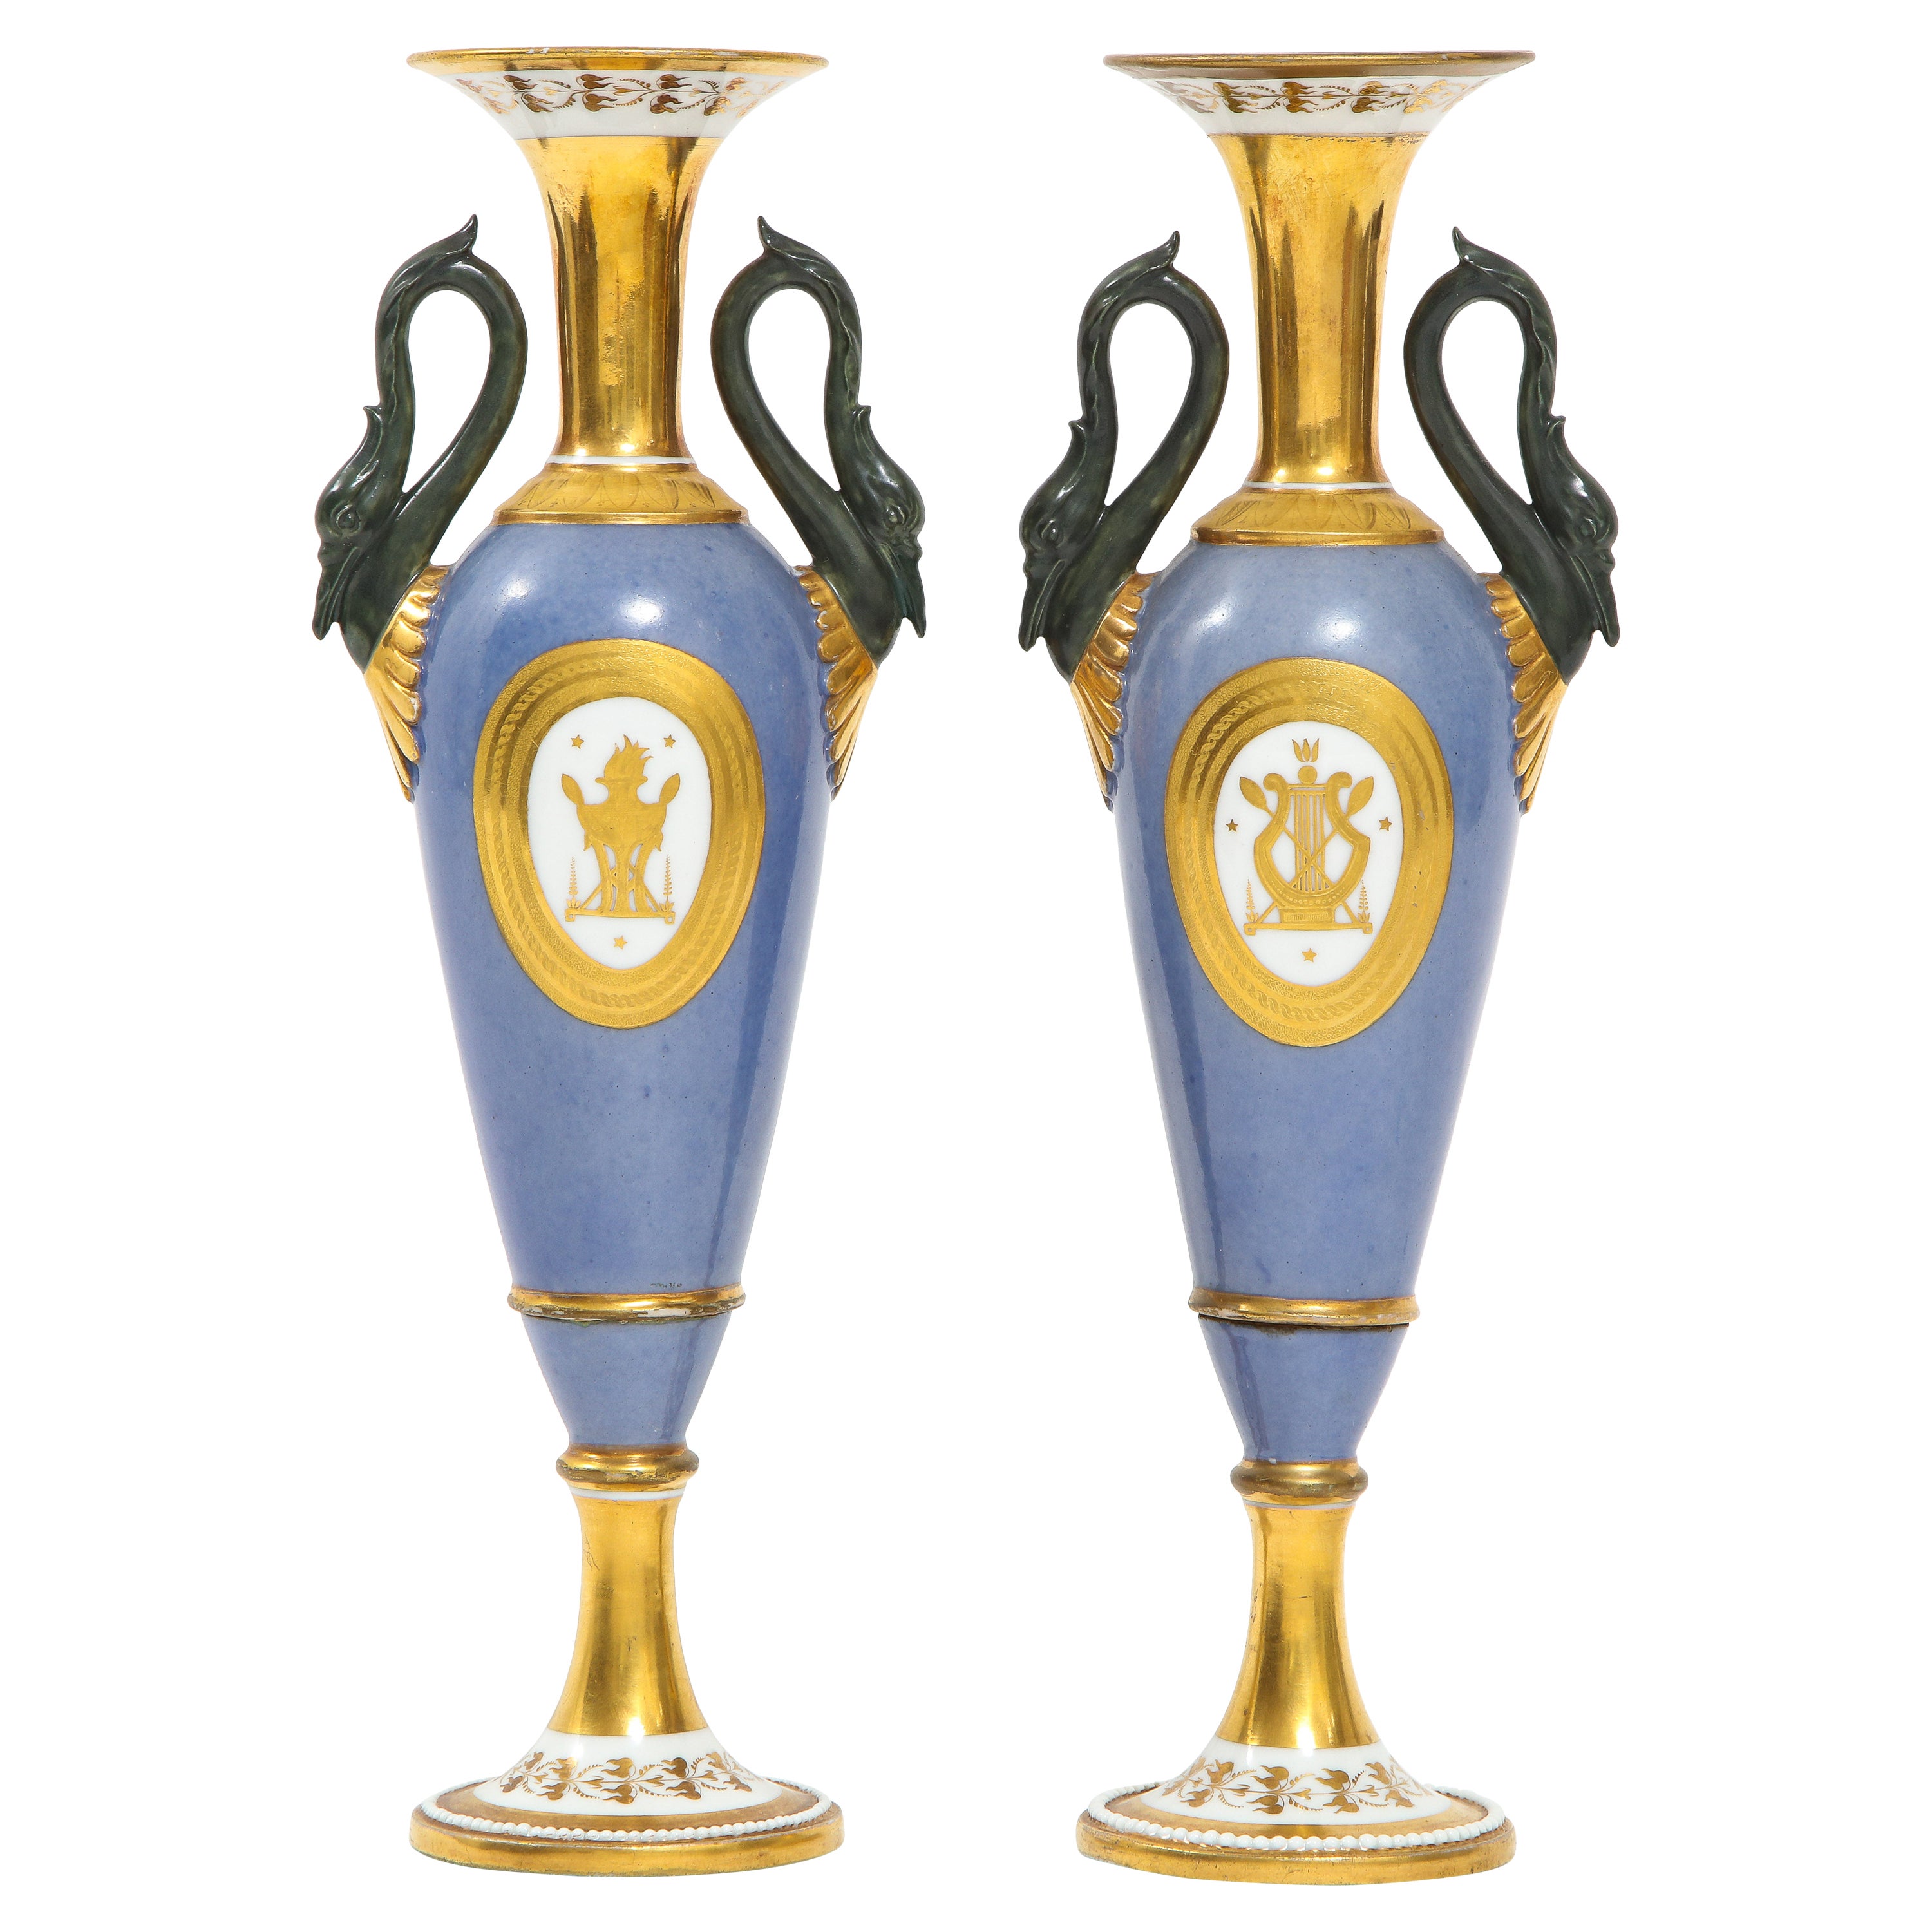 Paar französische Vasen mit Schwanengriff aus altem Pariser Porzellan des 19. Jahrhunderts, markiert